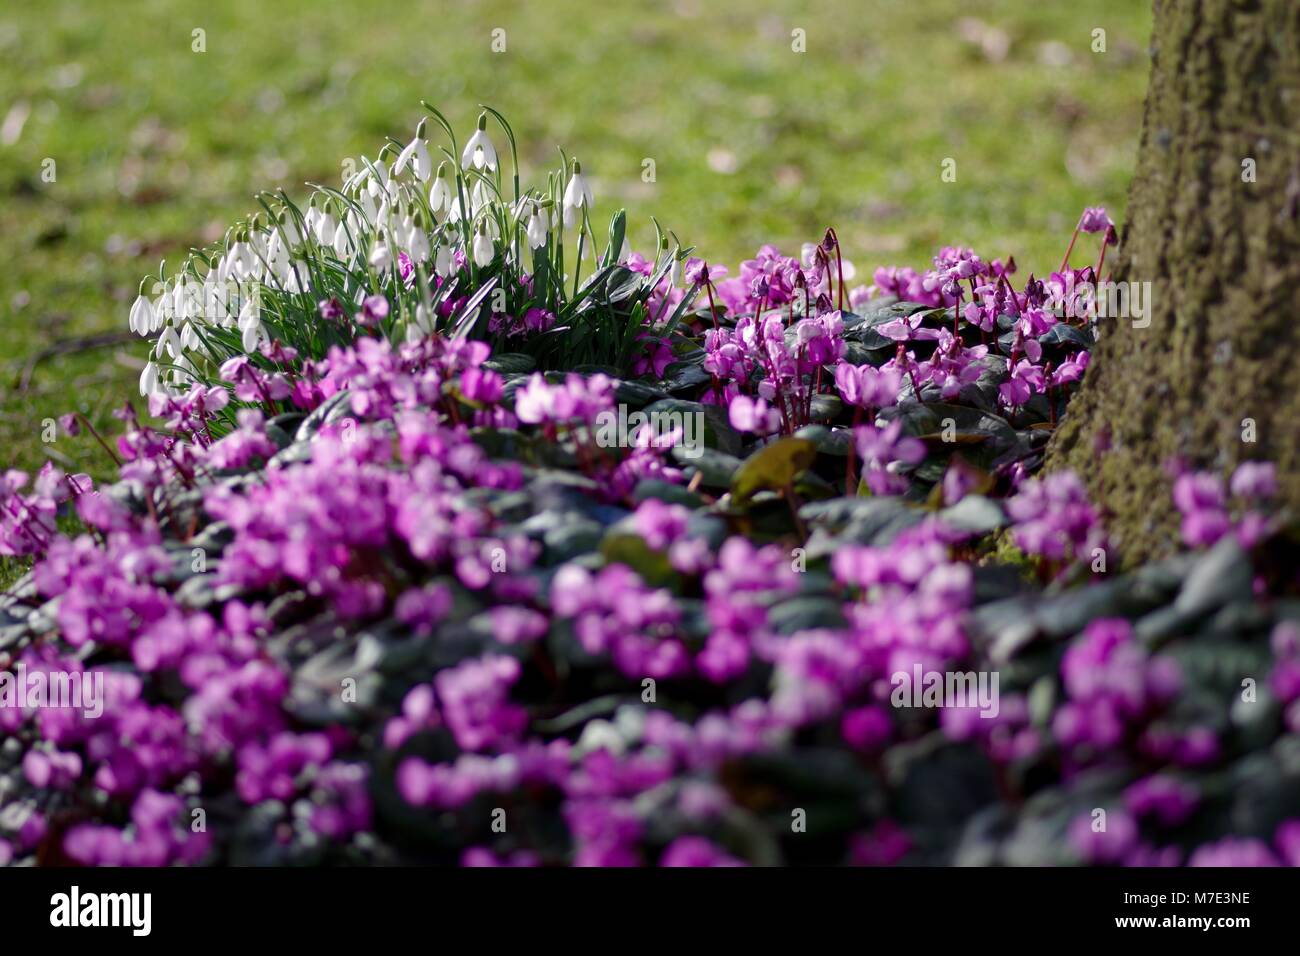 Cyclamen Coum und Schneeglöckchen, winterharte Staude Frühlingsblumen. Cruickshank Botanic Gardens, Ola Aberdeen, Schottland, Großbritannien. Stockfoto